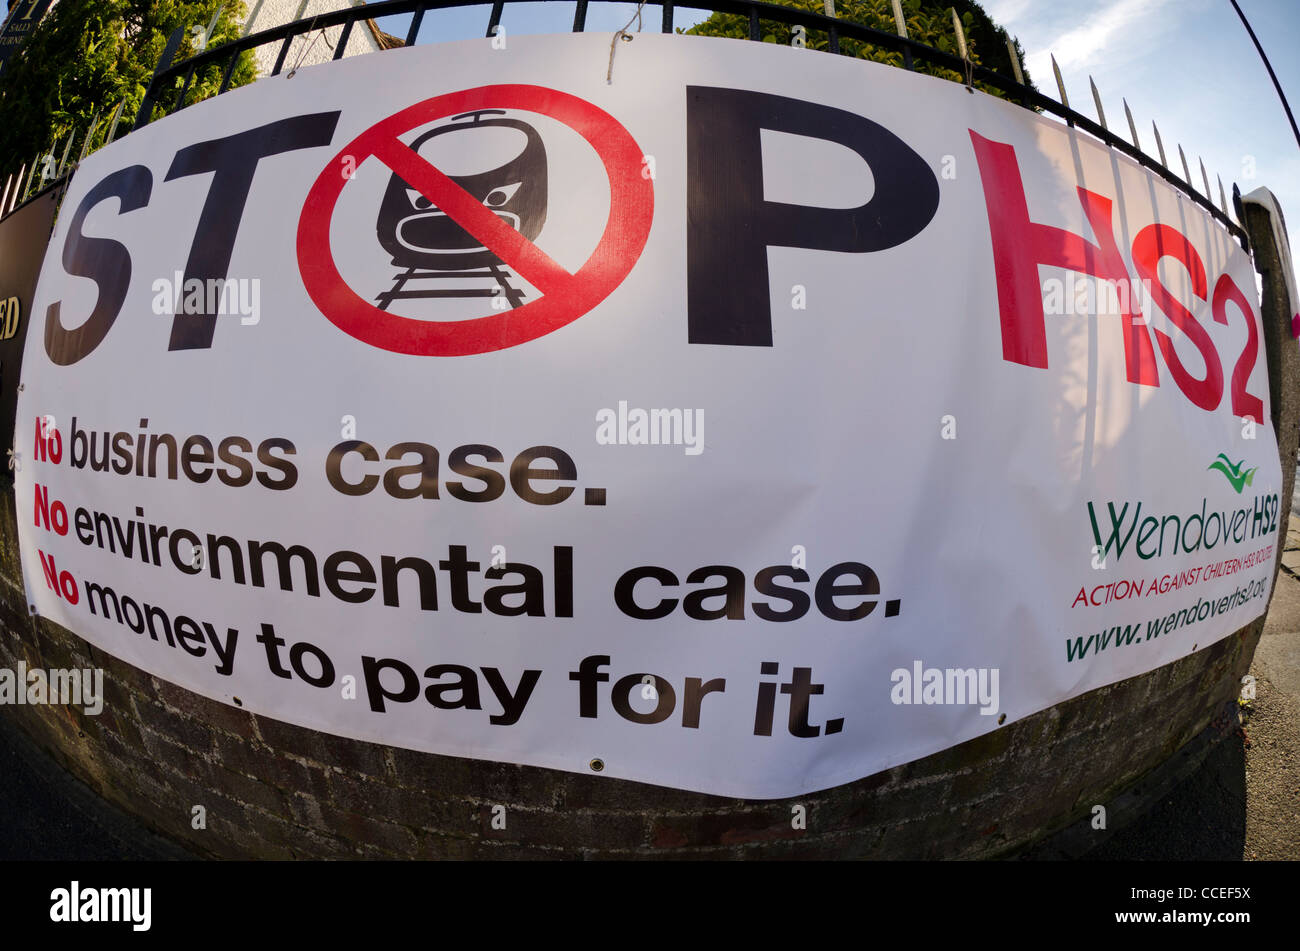 Detener el HS2 campaña de protesta banner en Wendover Bucks UK Foto de stock